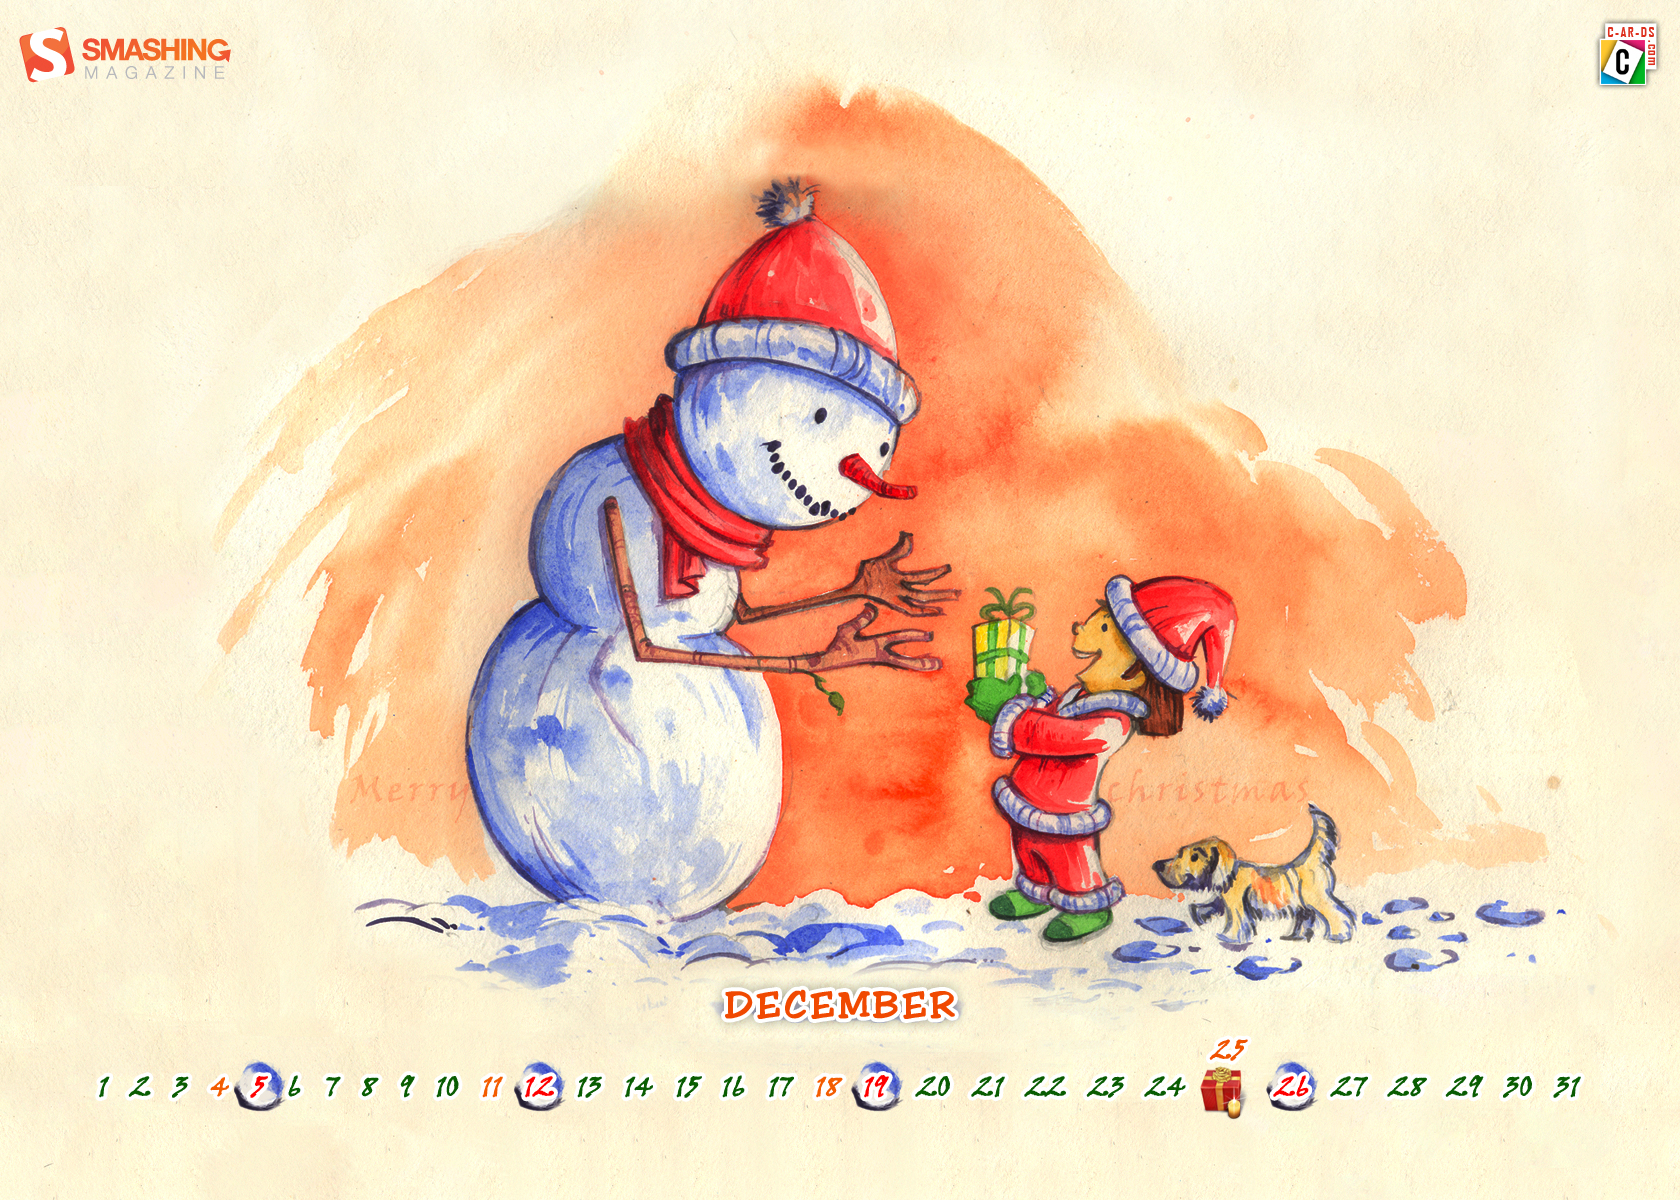 3d обои Календарь на декабрь, Маленький санта вручает подарок снеговику подарок (Marry Chr istmas, december)  эмо # 89739